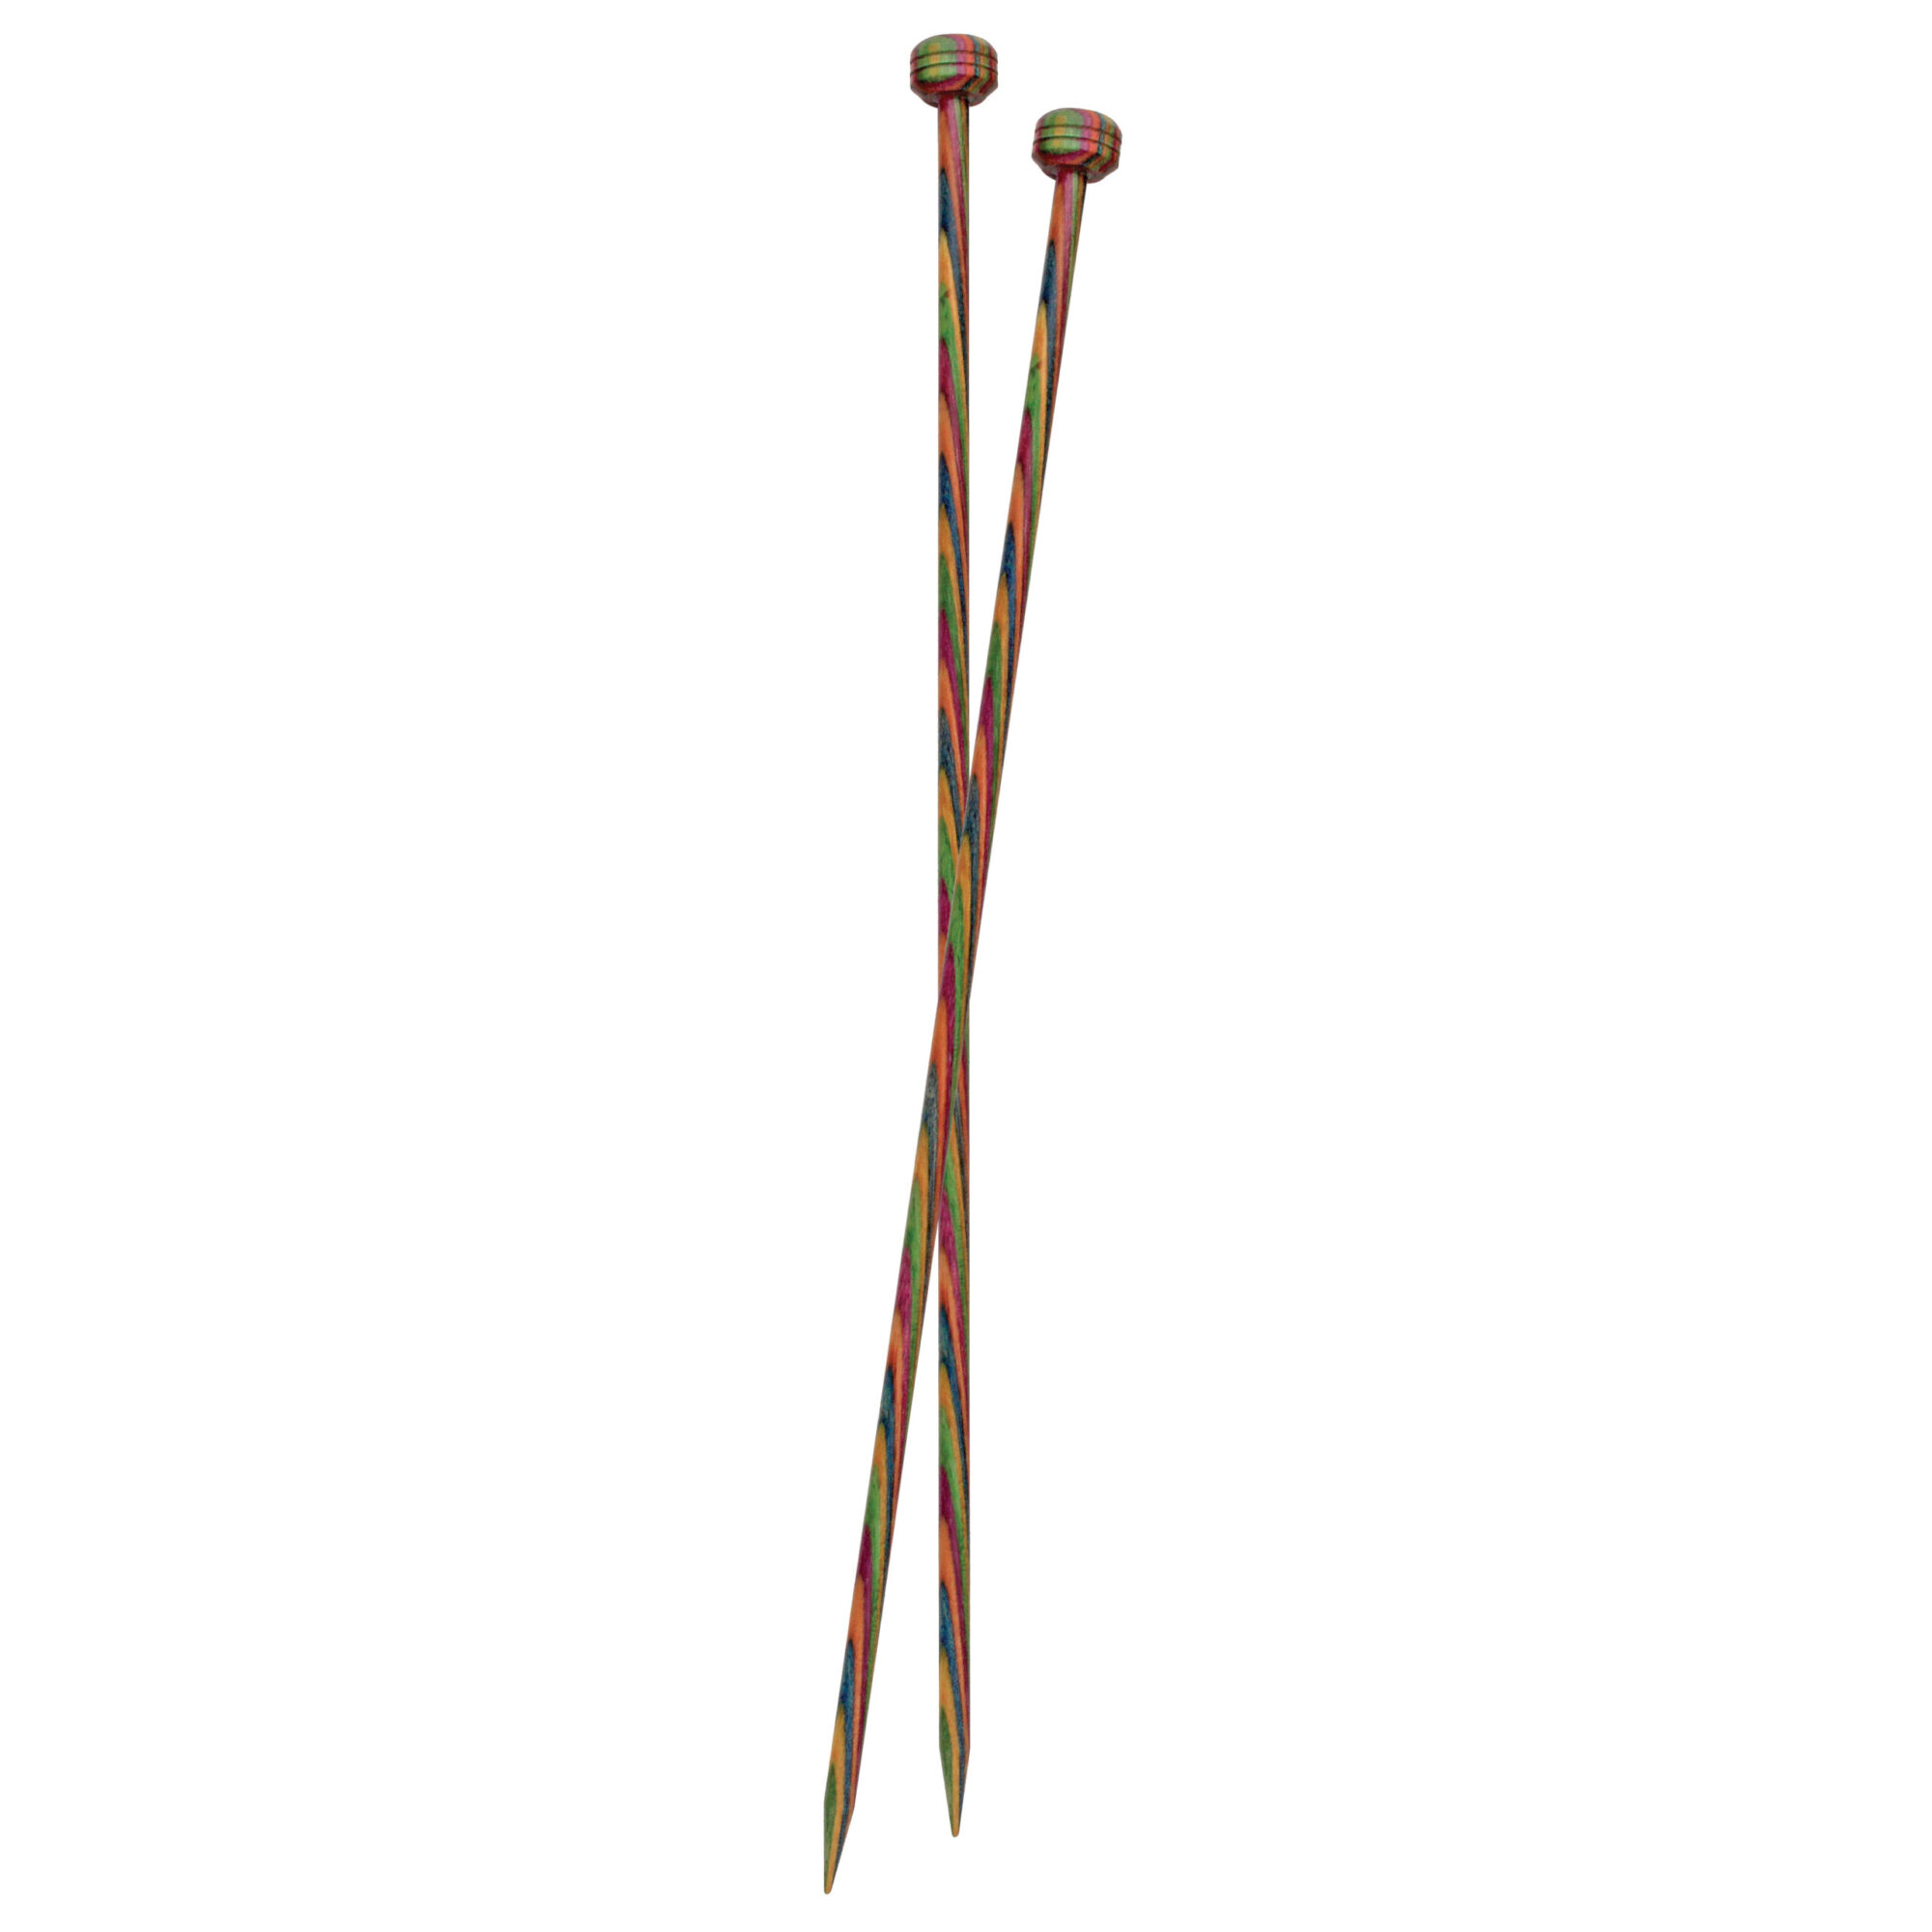 KnitPro Symfonie Knitting Needles – 15cm long product image